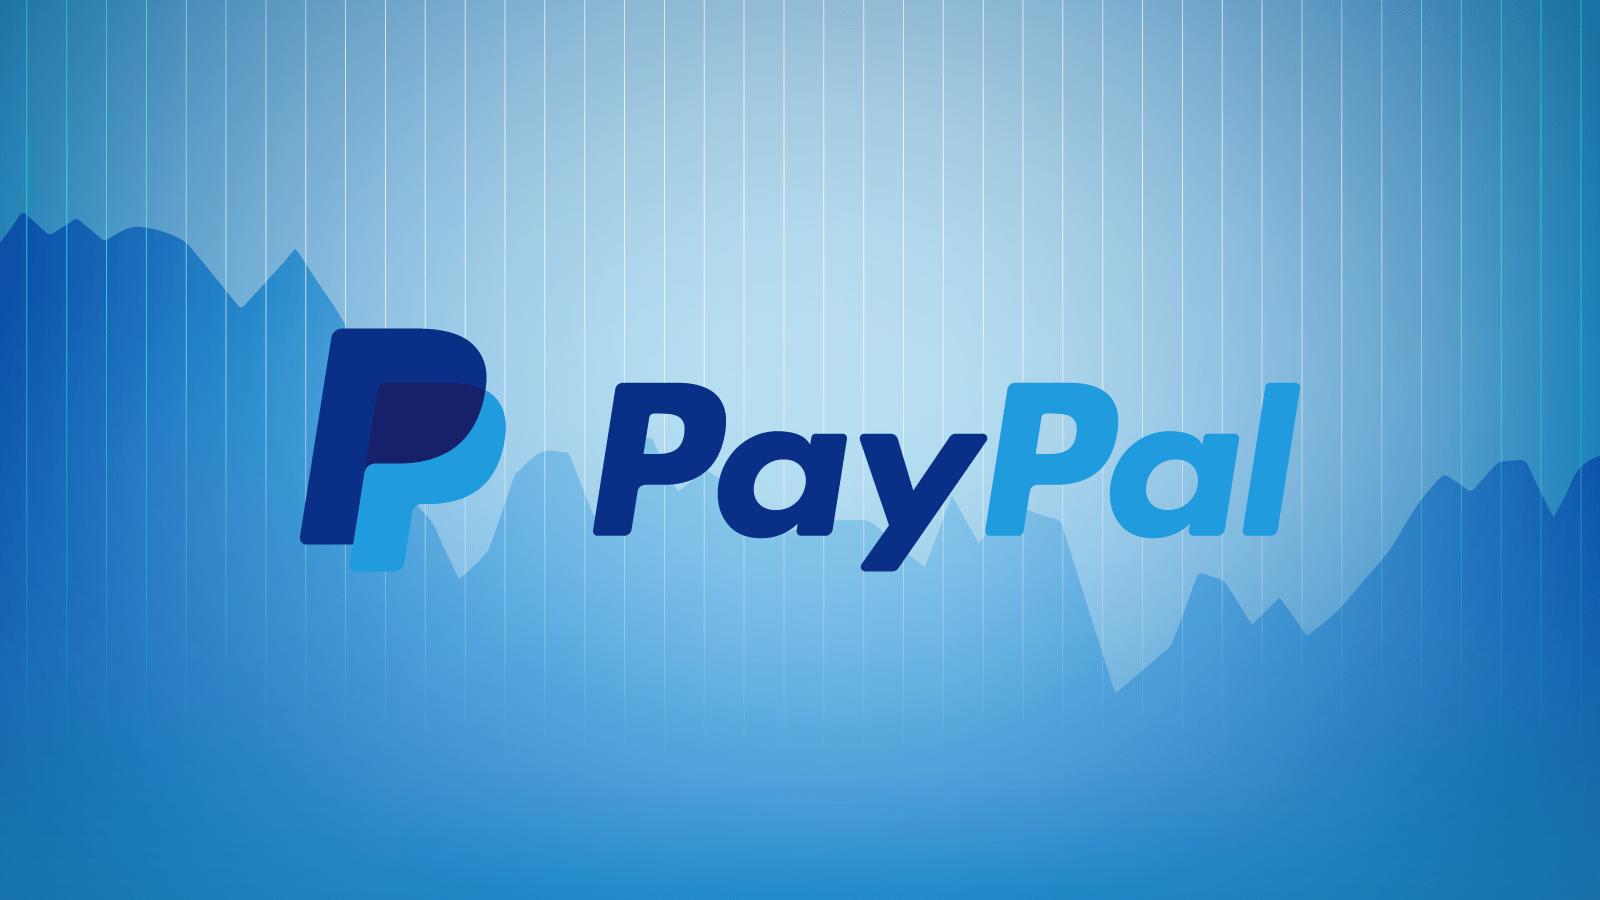 طريقة التسجيل في paypal وما هو paypal وما الخدمات التي يقدمها وكيفية تفعيل الحساب على الpaypal